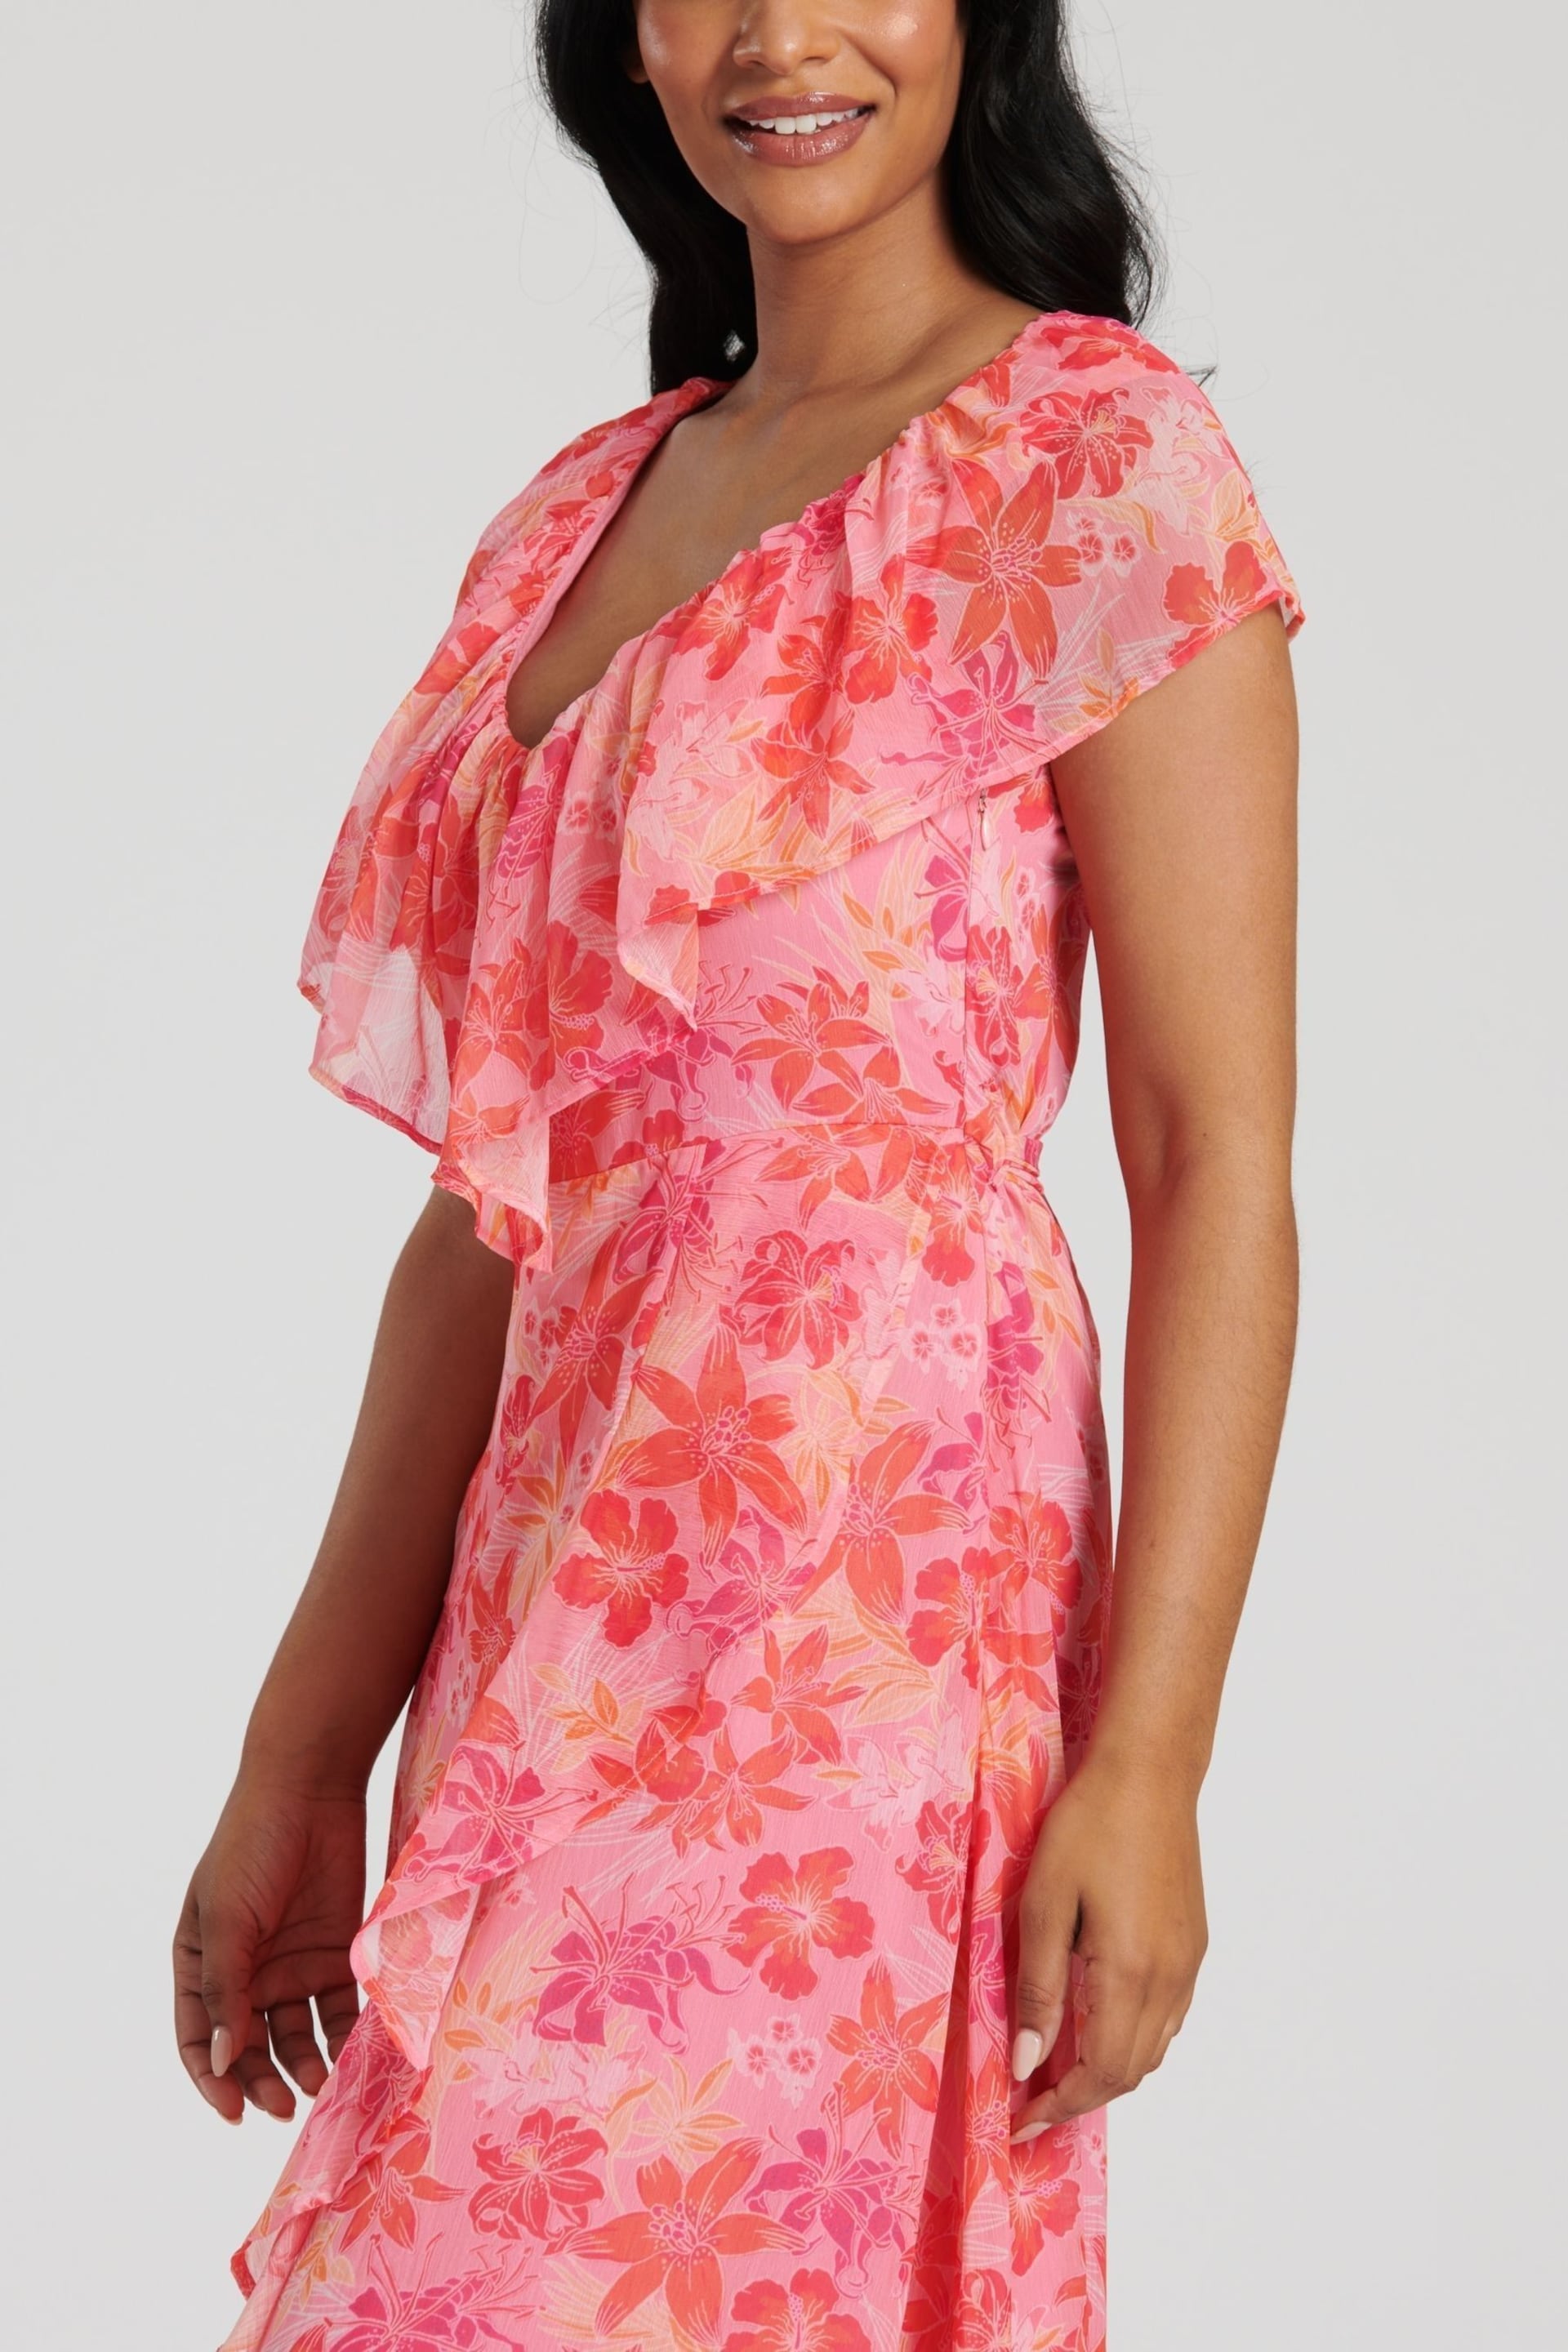 South Beach Pink Chiffon Print Frill Neck Wrap Midi Dress - Image 3 of 4